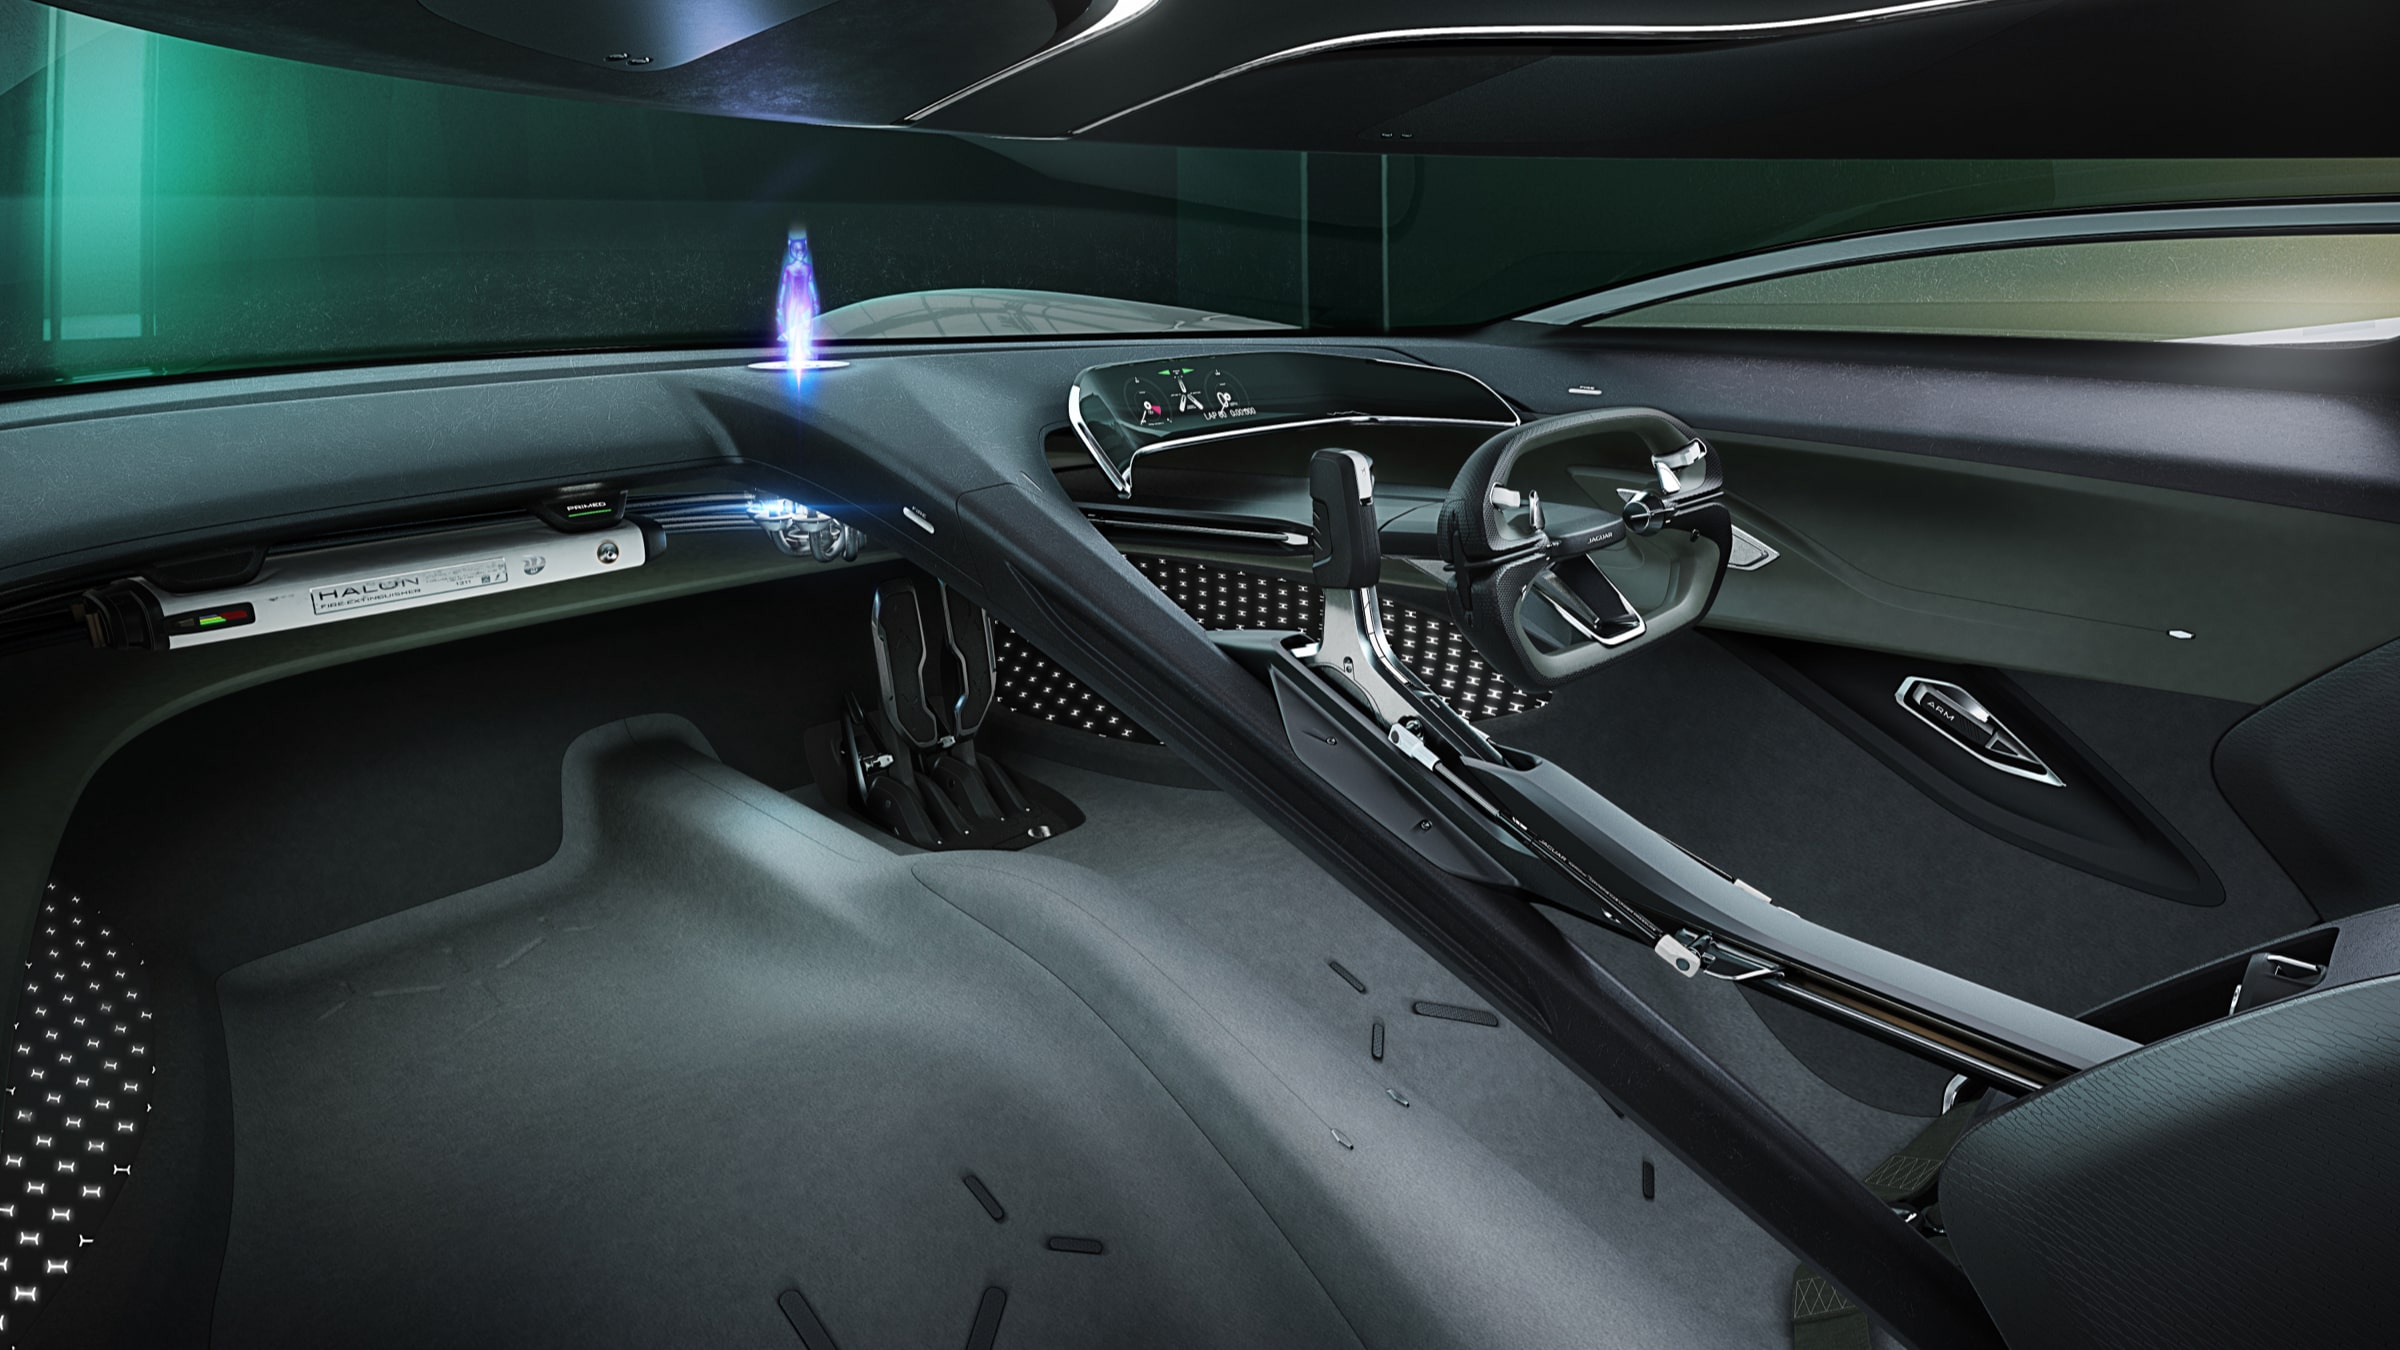 Jaguar GTSV cockpit hmi hologram assistant